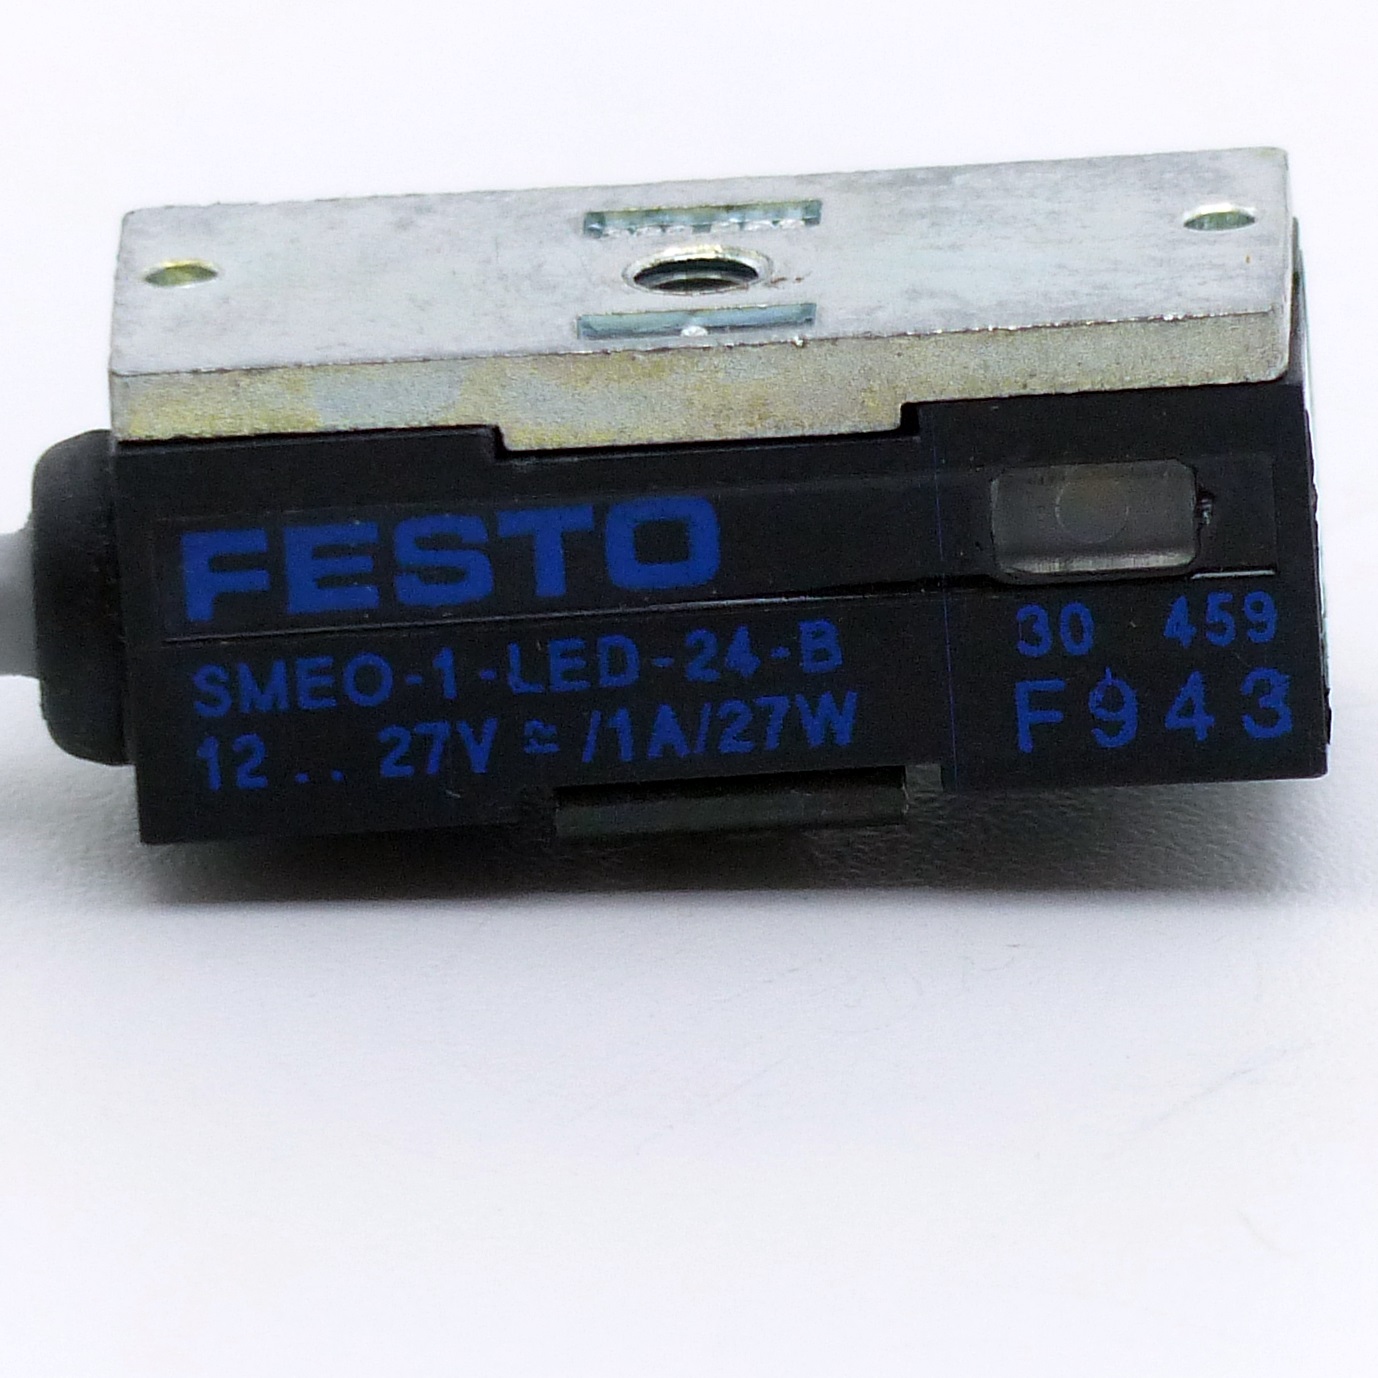 Näherungsschalter SMEO-1-LED-24-B 